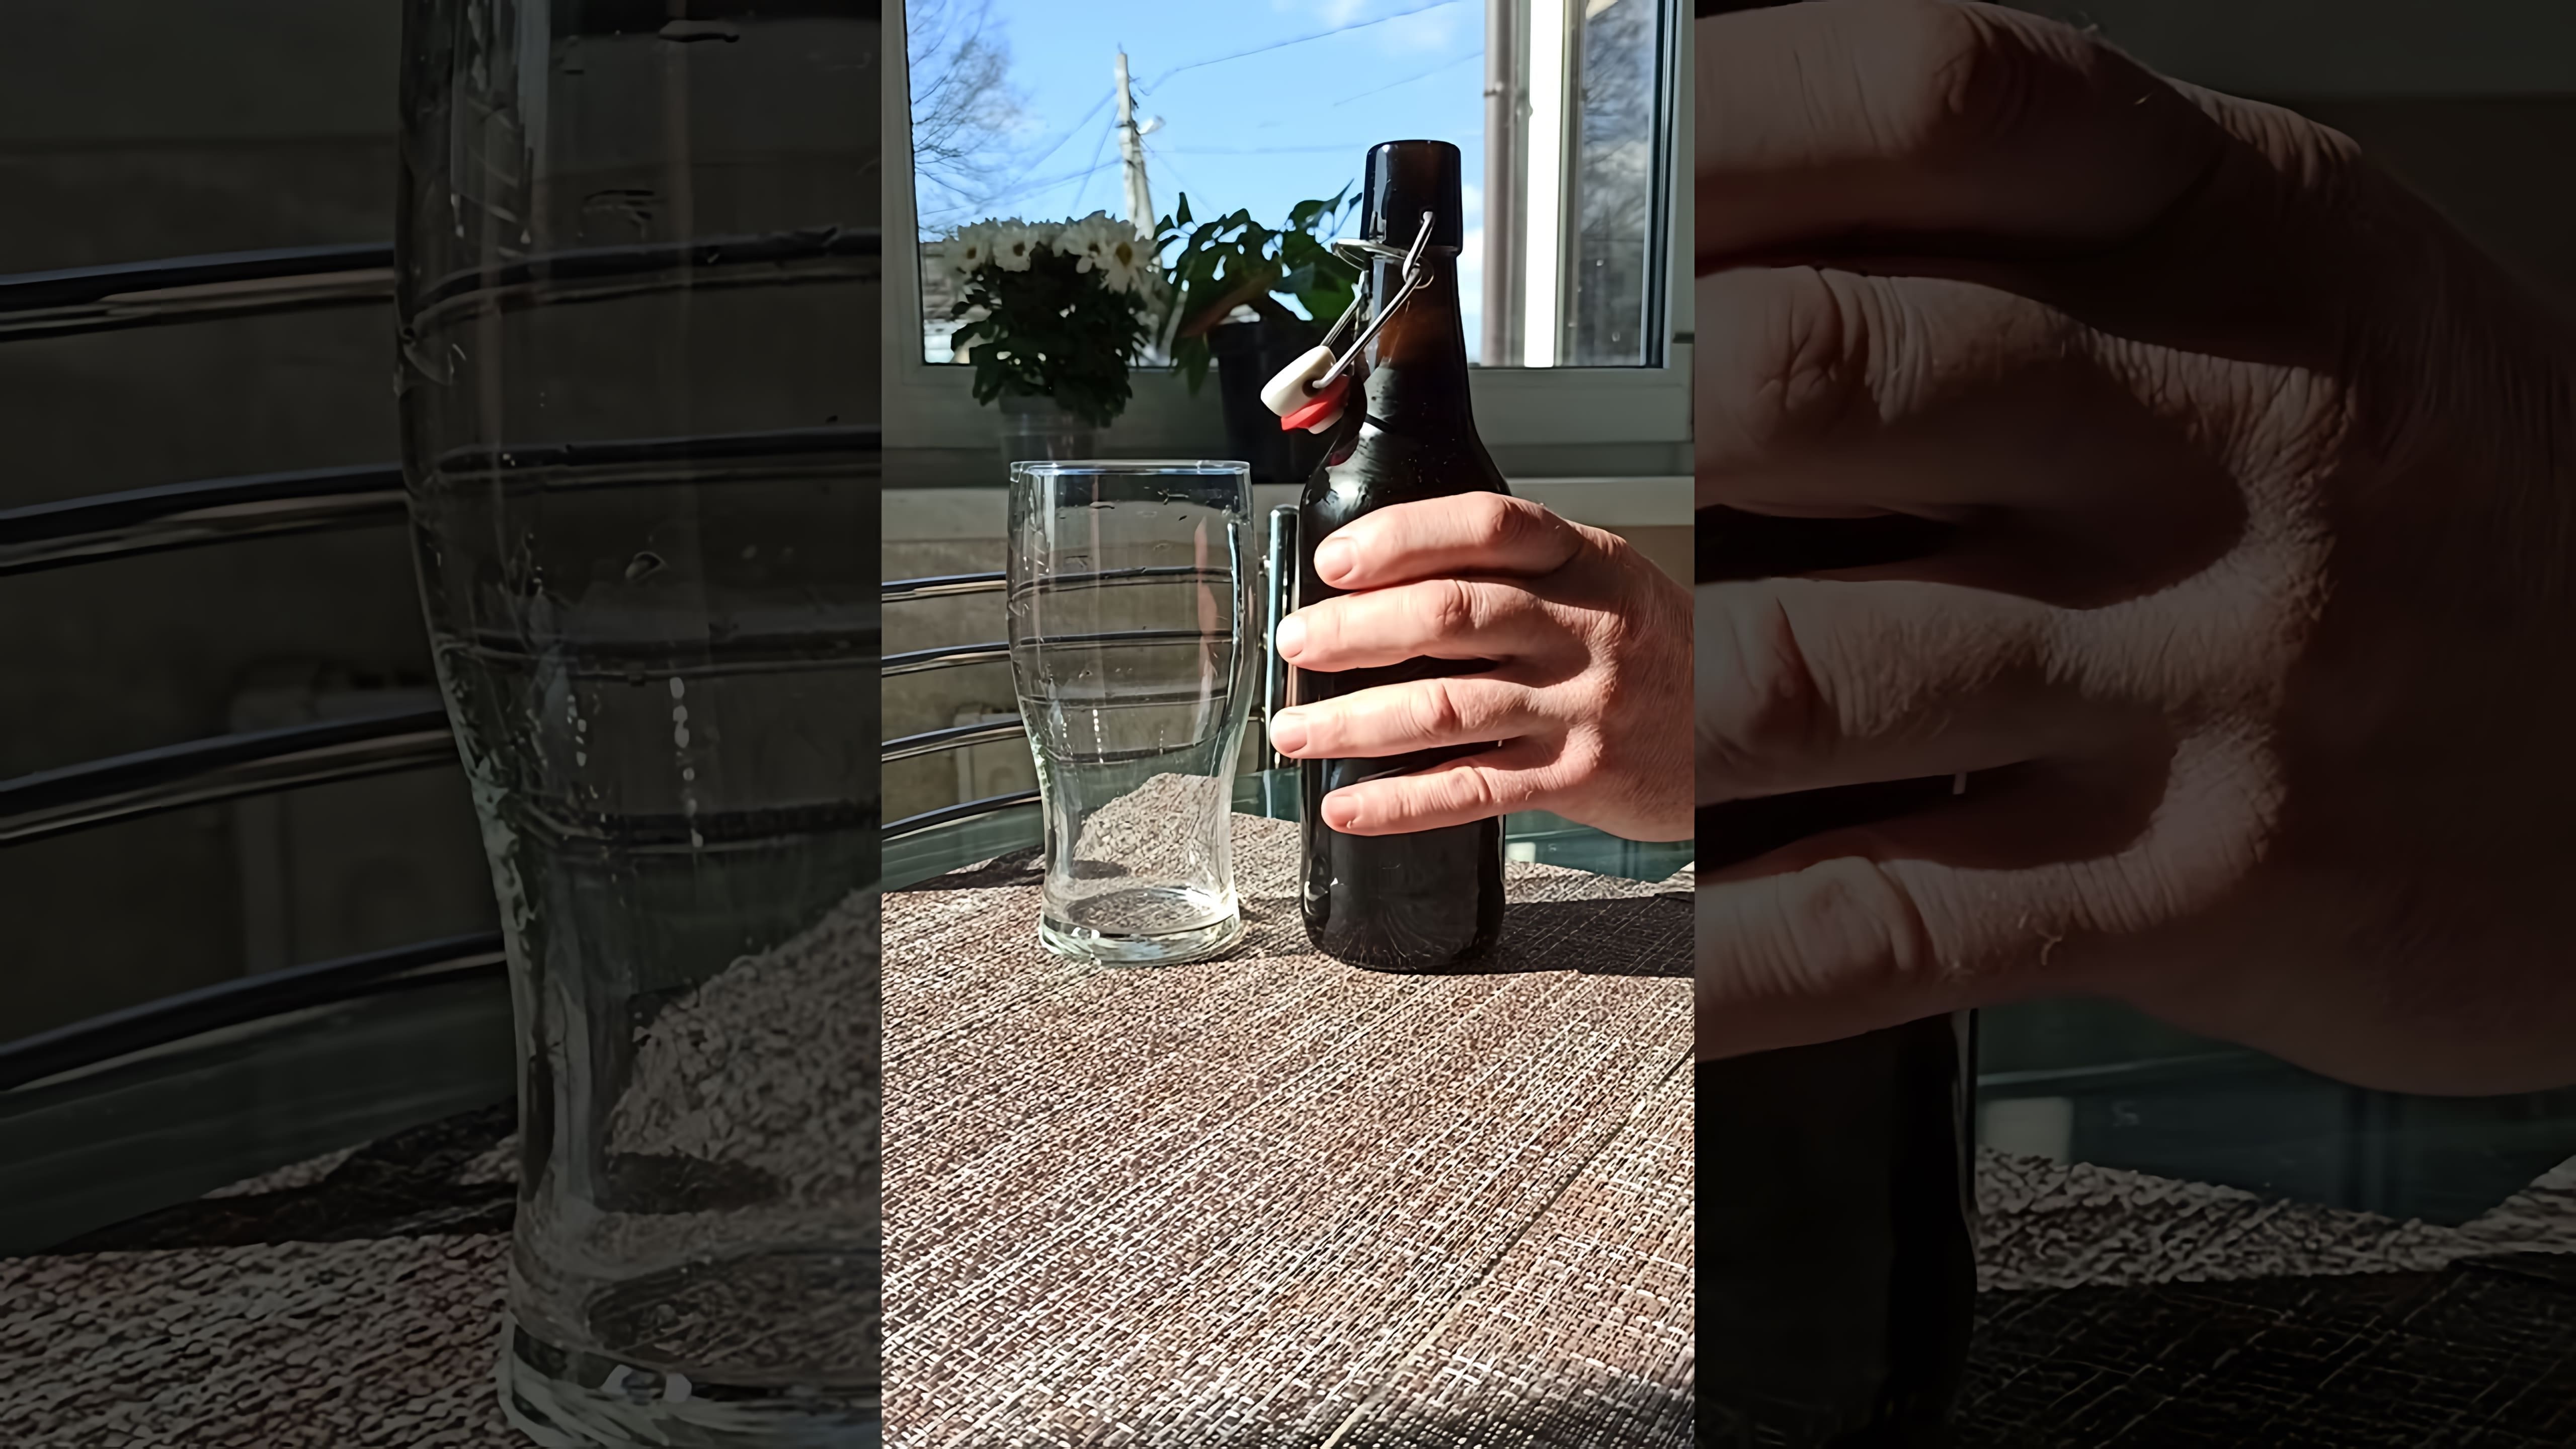 В данном видео-ролике демонстрируется процесс домашнего пивоварения, начиная от подготовки ингредиентов и заканчивая разливом готового напитка